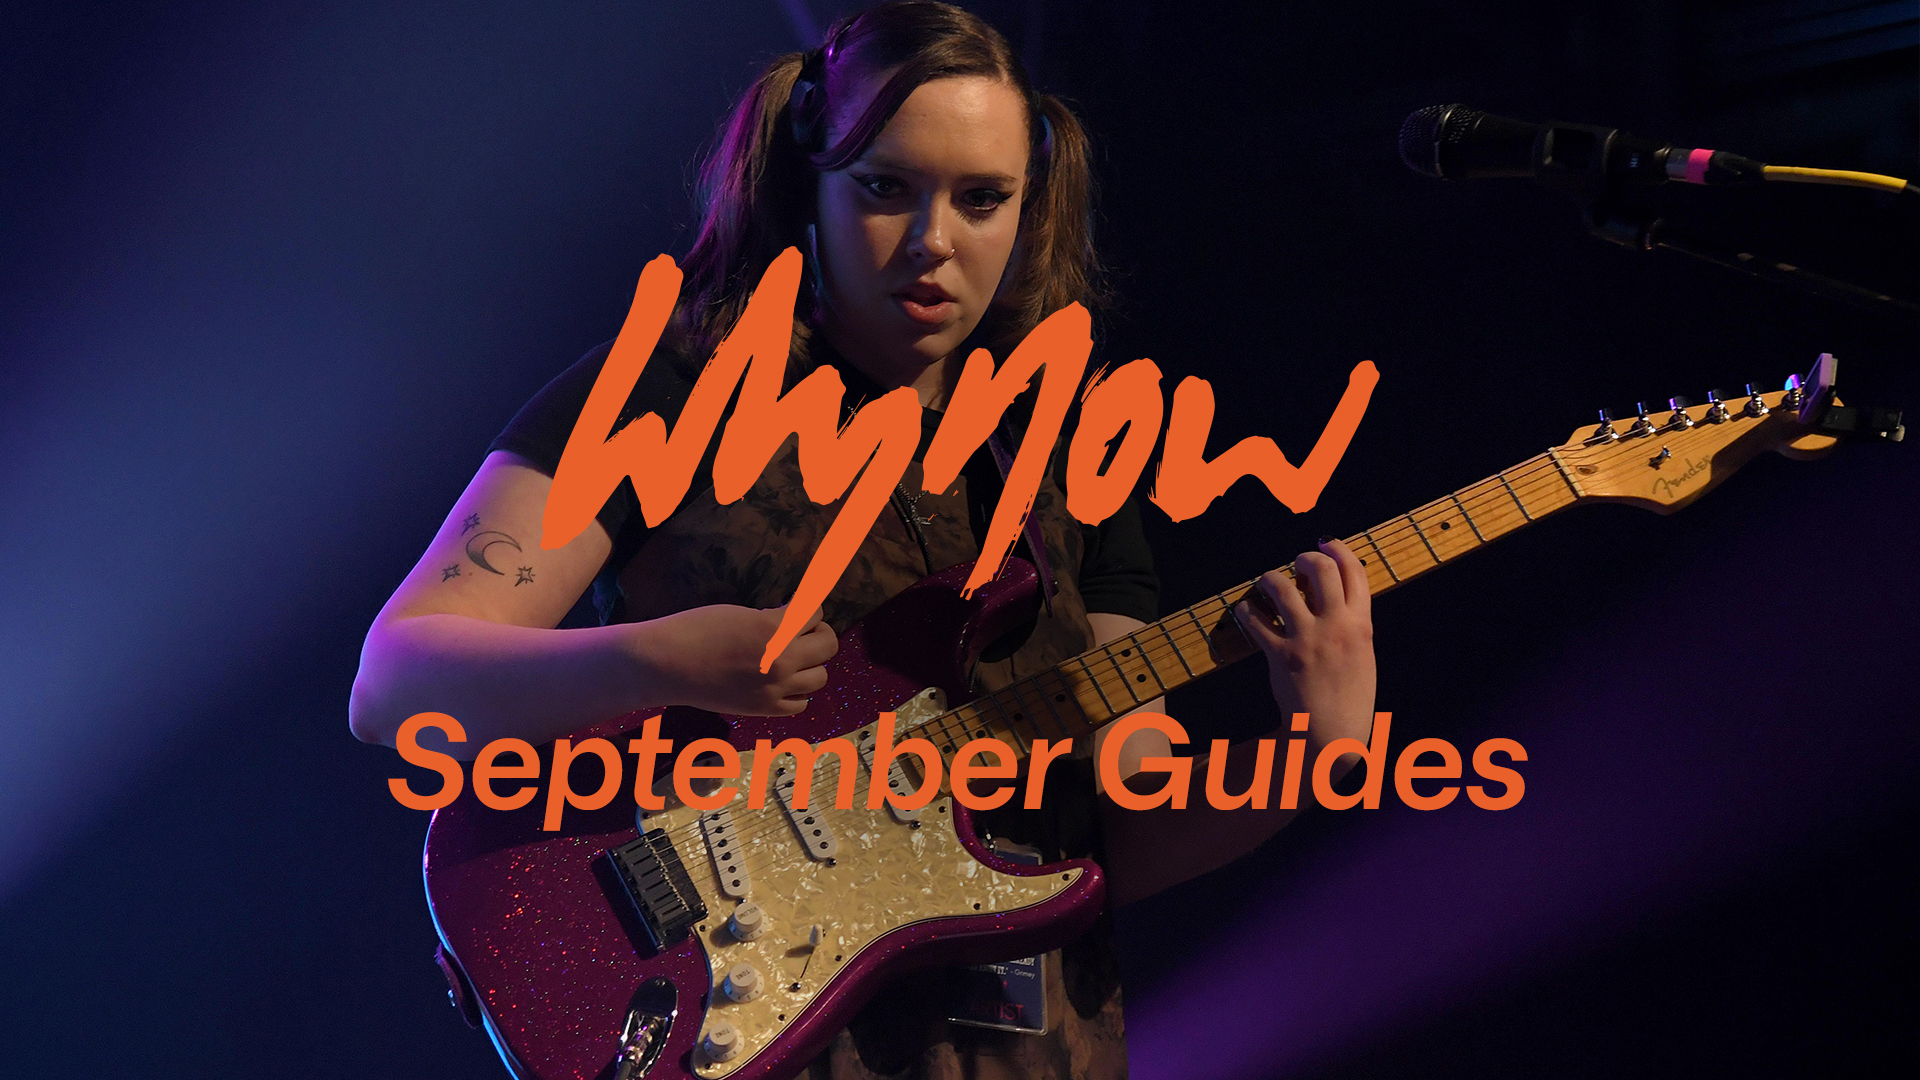 September gigs guide